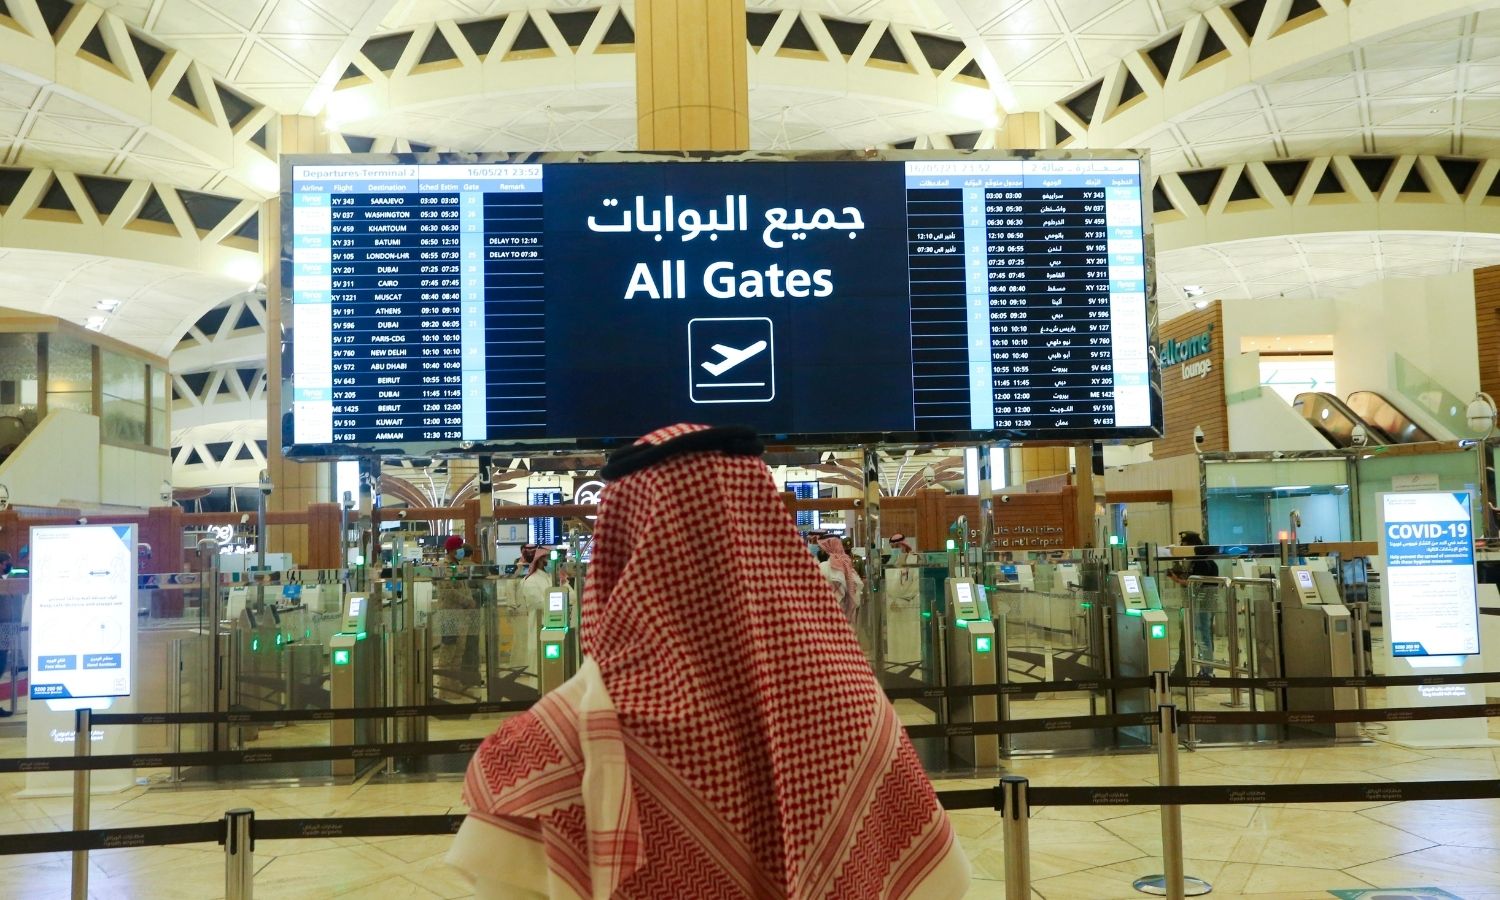 رجل سعودي يتحقق من مواعيد الرحلات في مطار الملك خالد الدولي بالرياض في المملكة العربية السعودية - 16 أيار 2021 (رويترز)